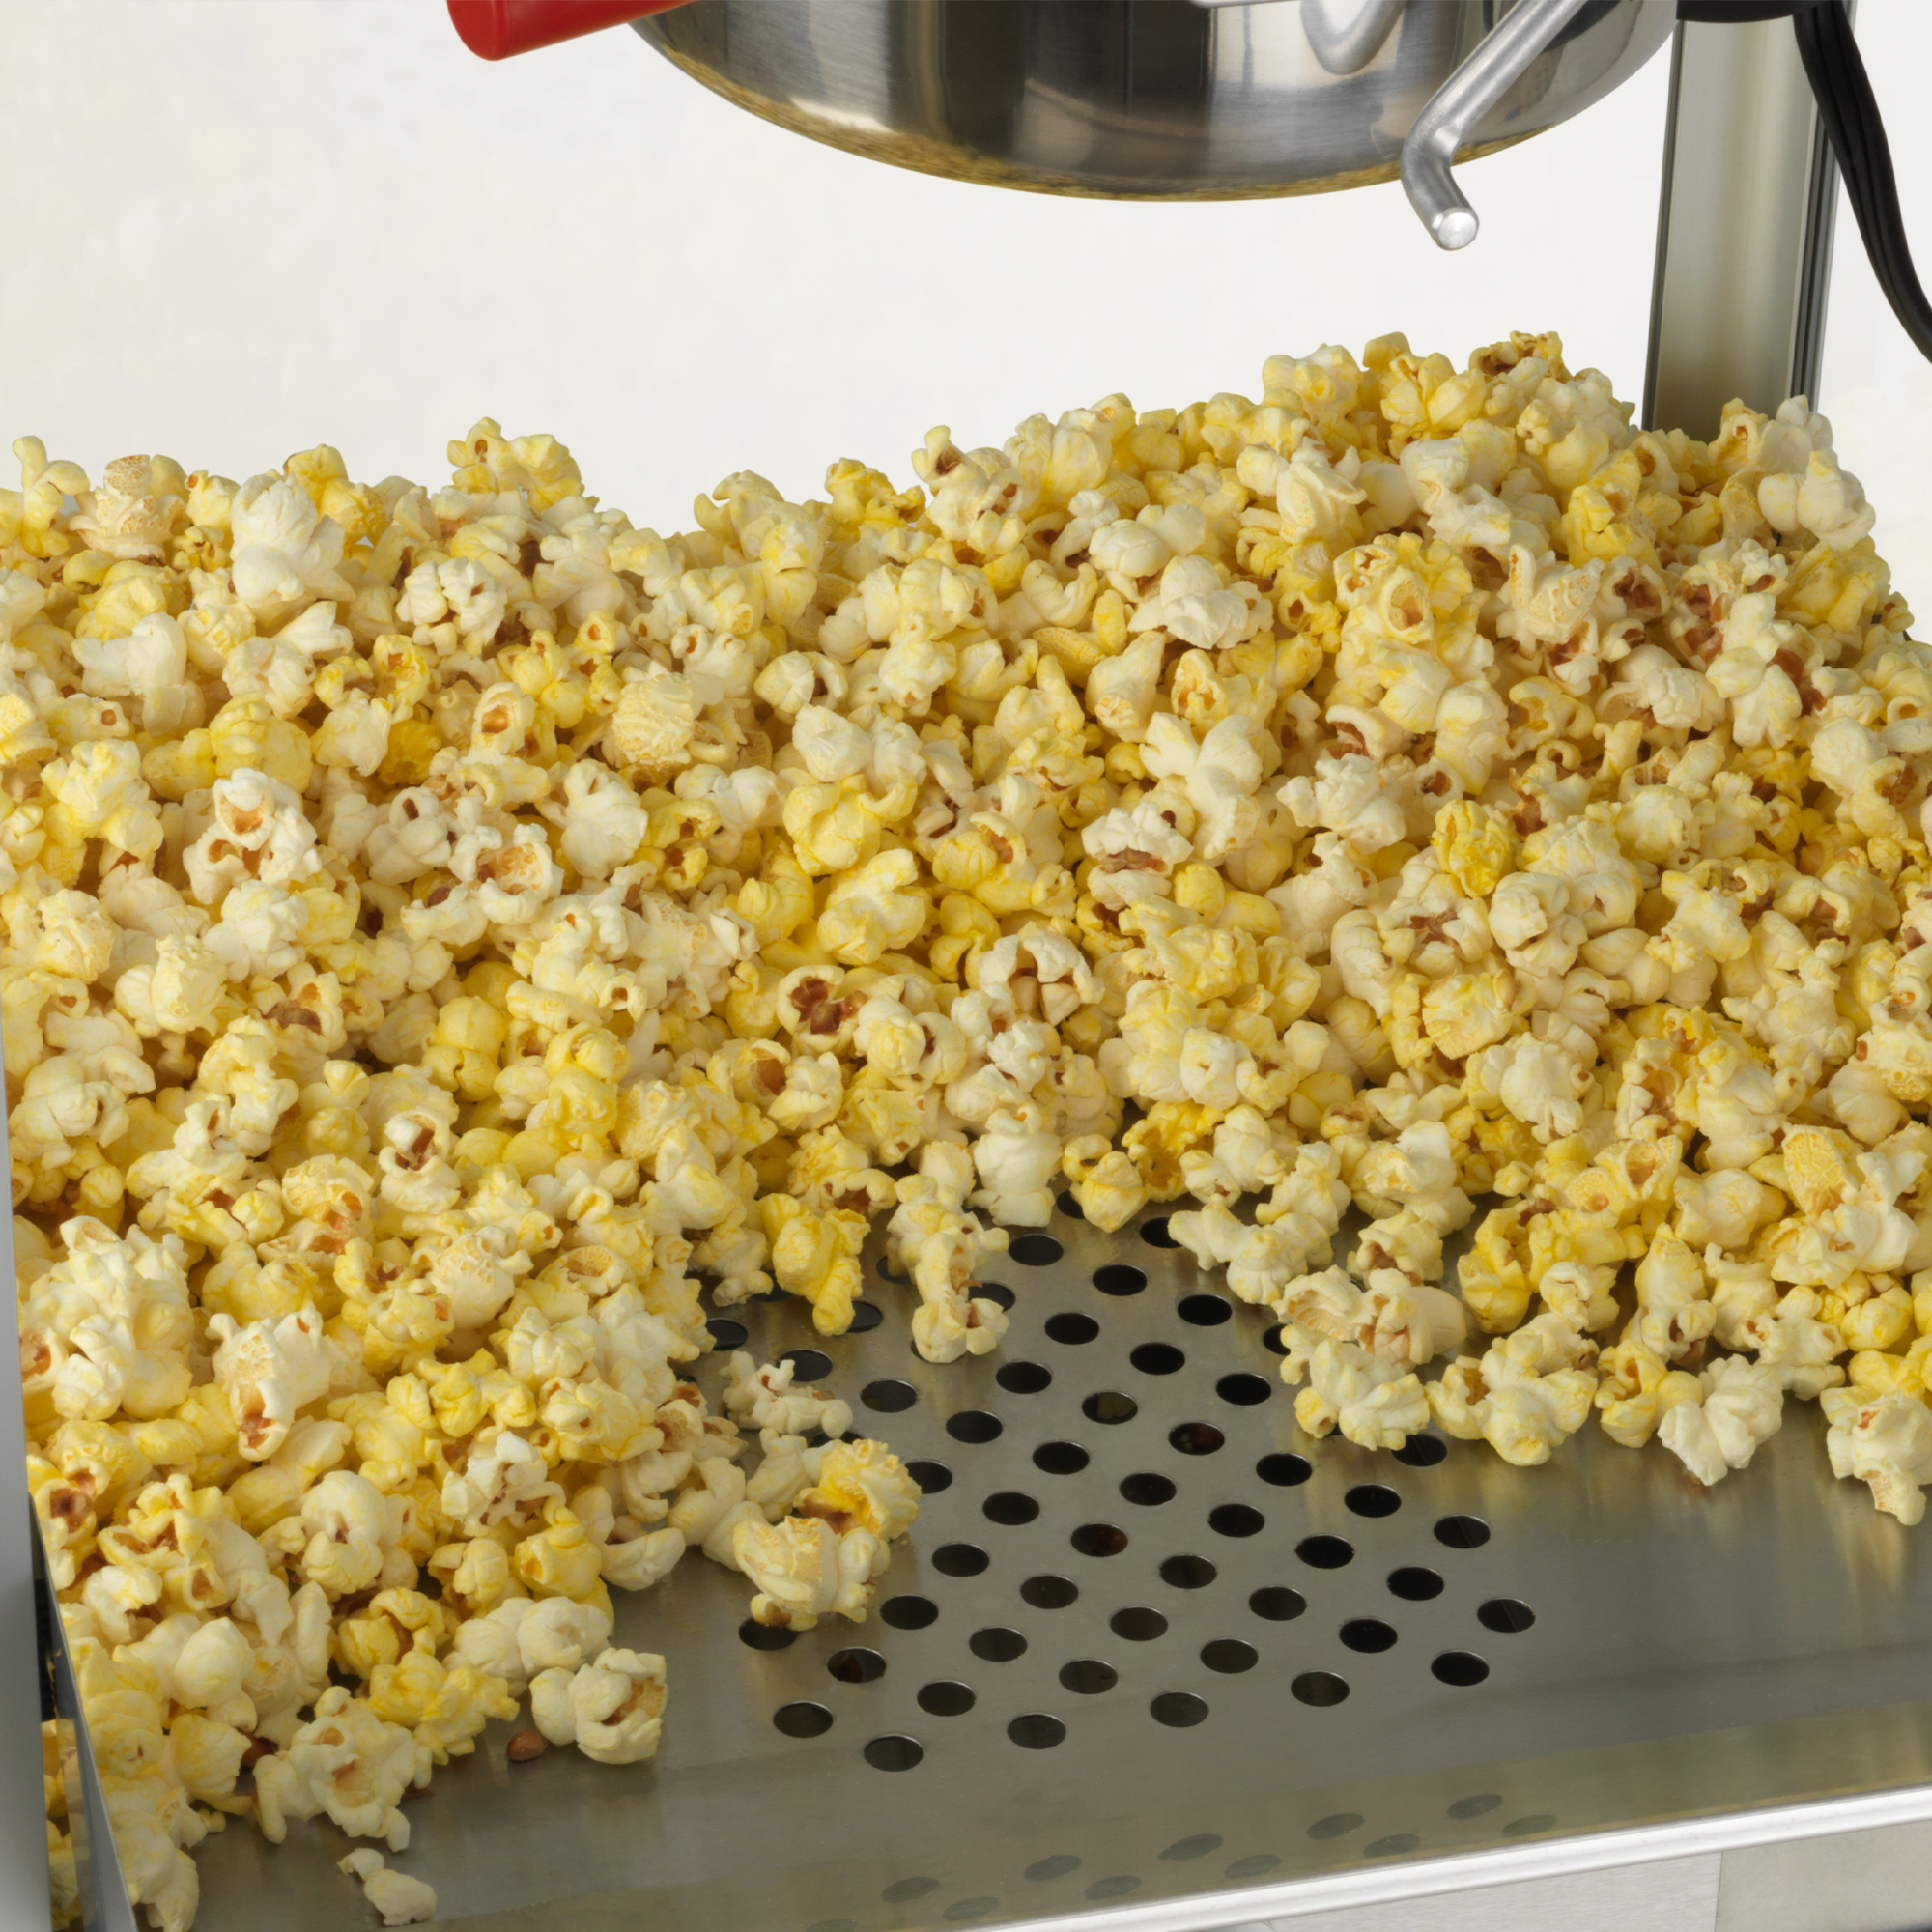 Amerihome Tabletop Popcorn Maker